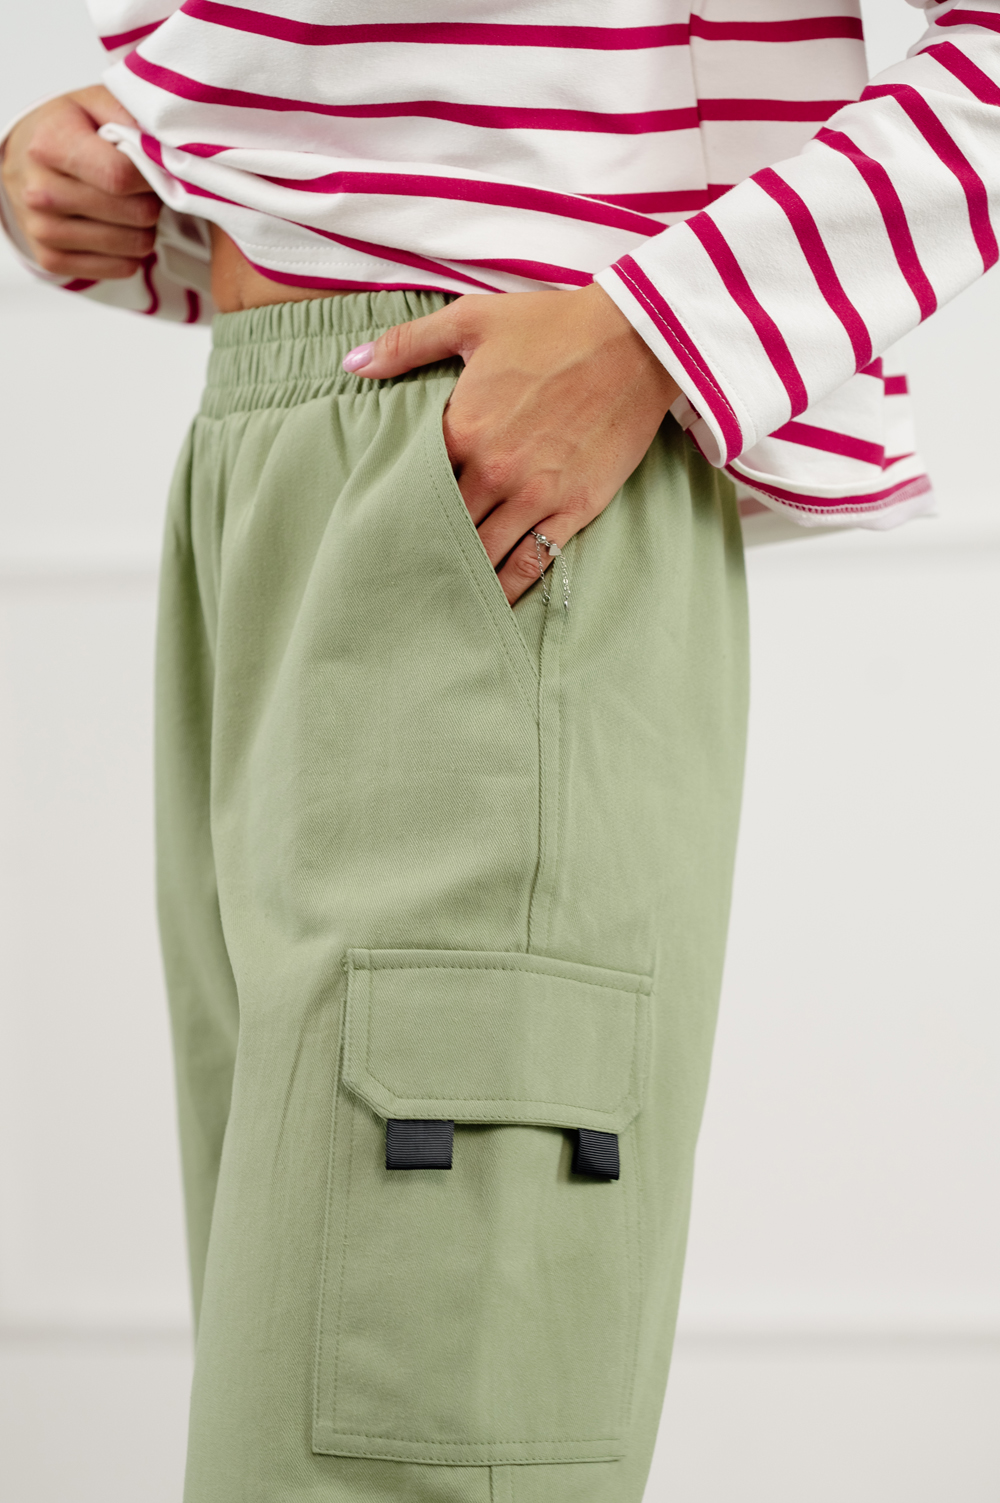 Casual брюки-карго оливкового цвета.